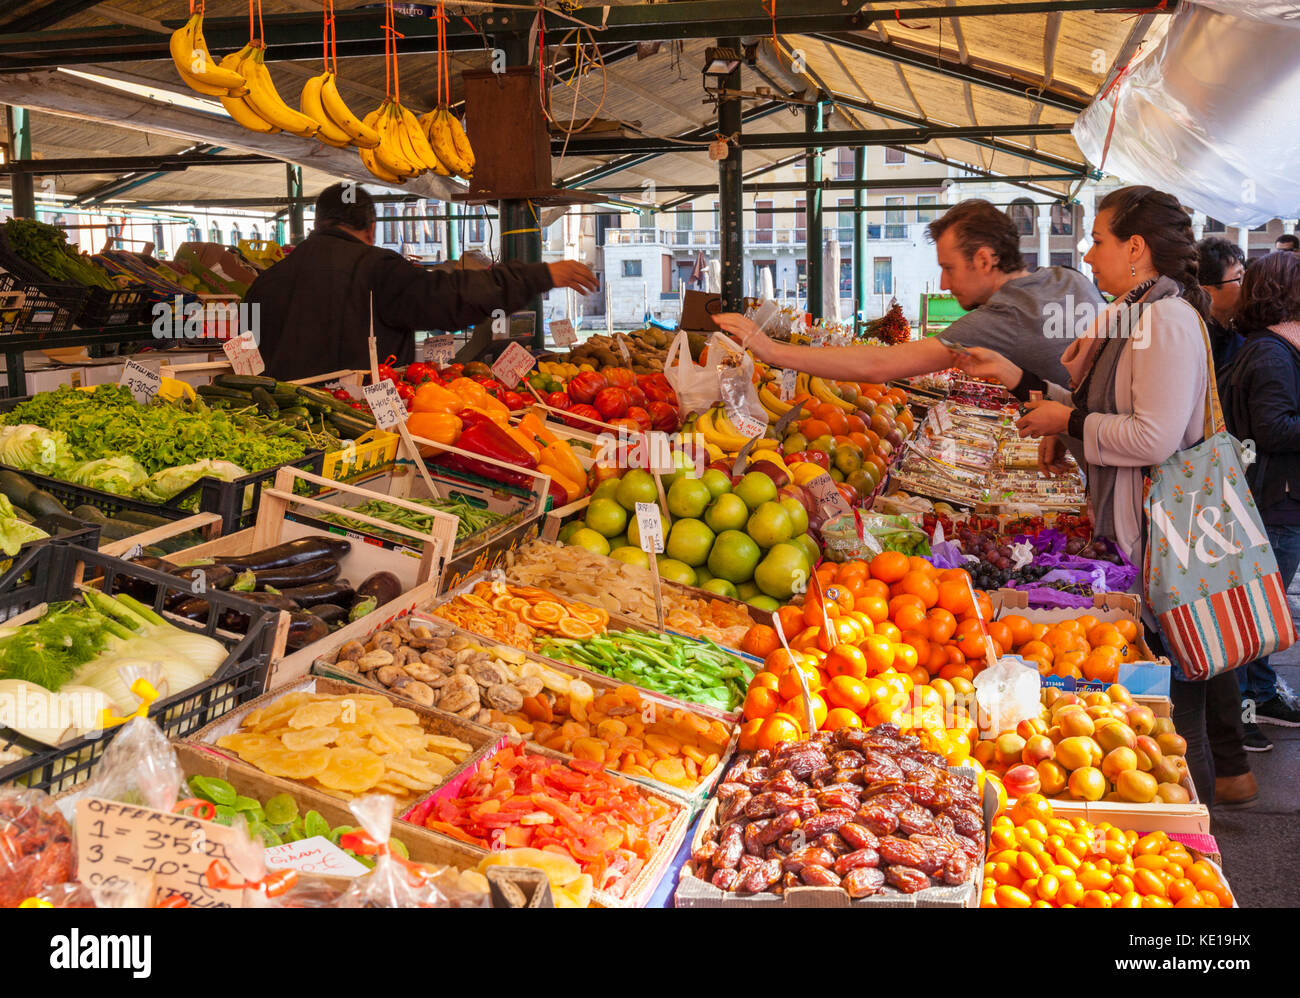 Obst- und Gemüsemacher kaufen frisches Obst und Gemüse an den Marktständen, die frische Produkte verkaufen Rialto Markt Venedig Italien EU Europa Stockfoto